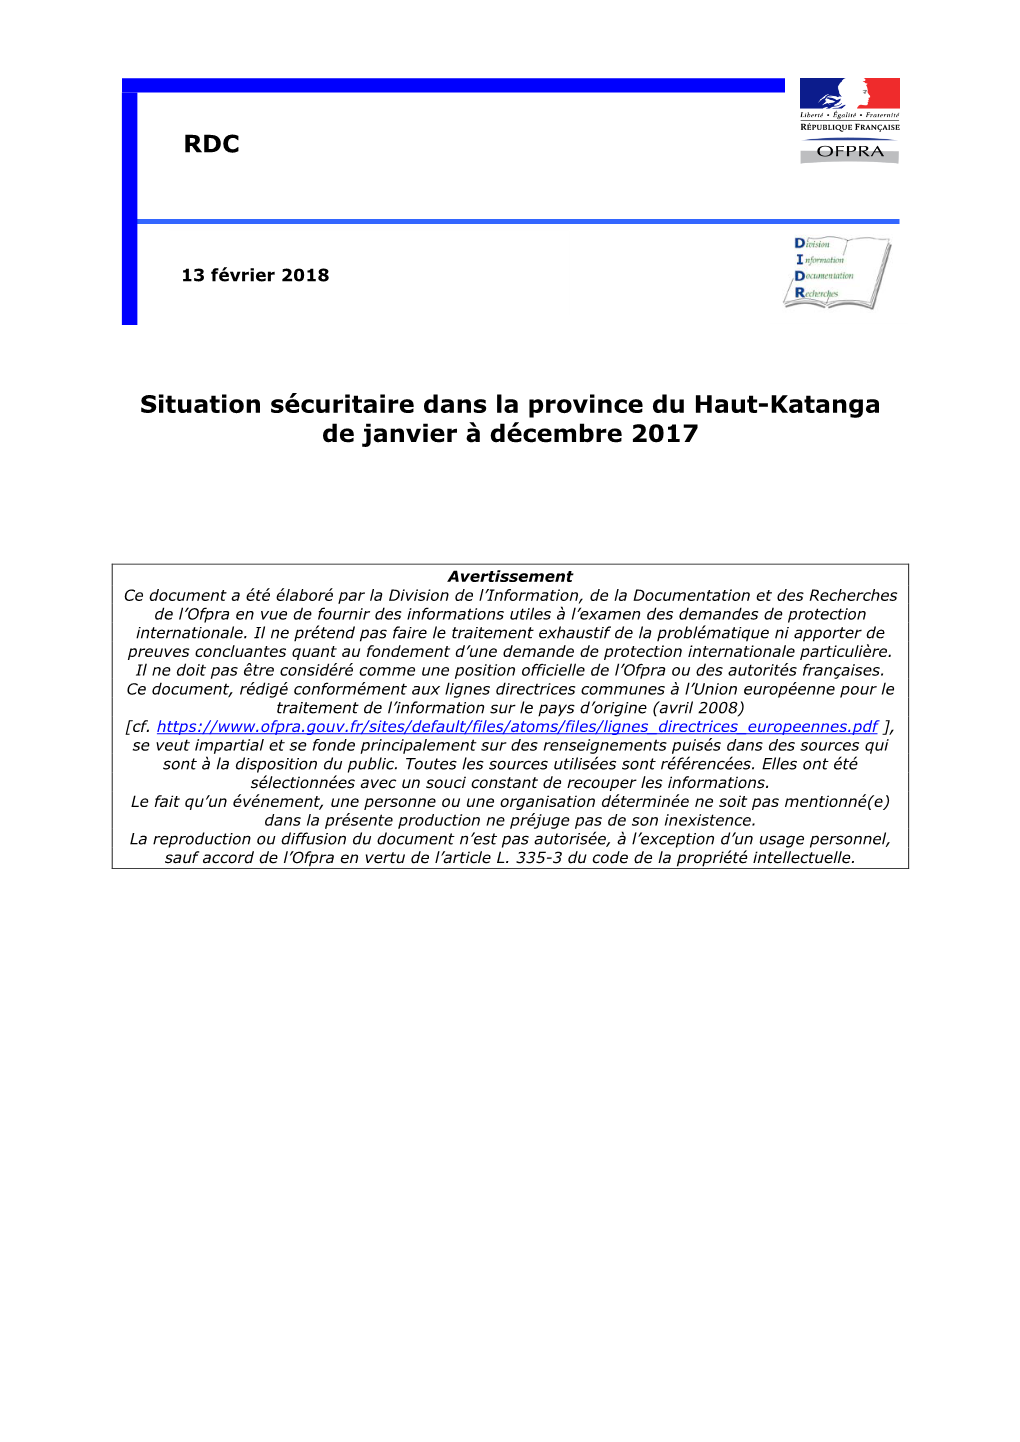 DIDR, RDC : Situation Sécuritaire Dans La Province Du Haut-Katanga